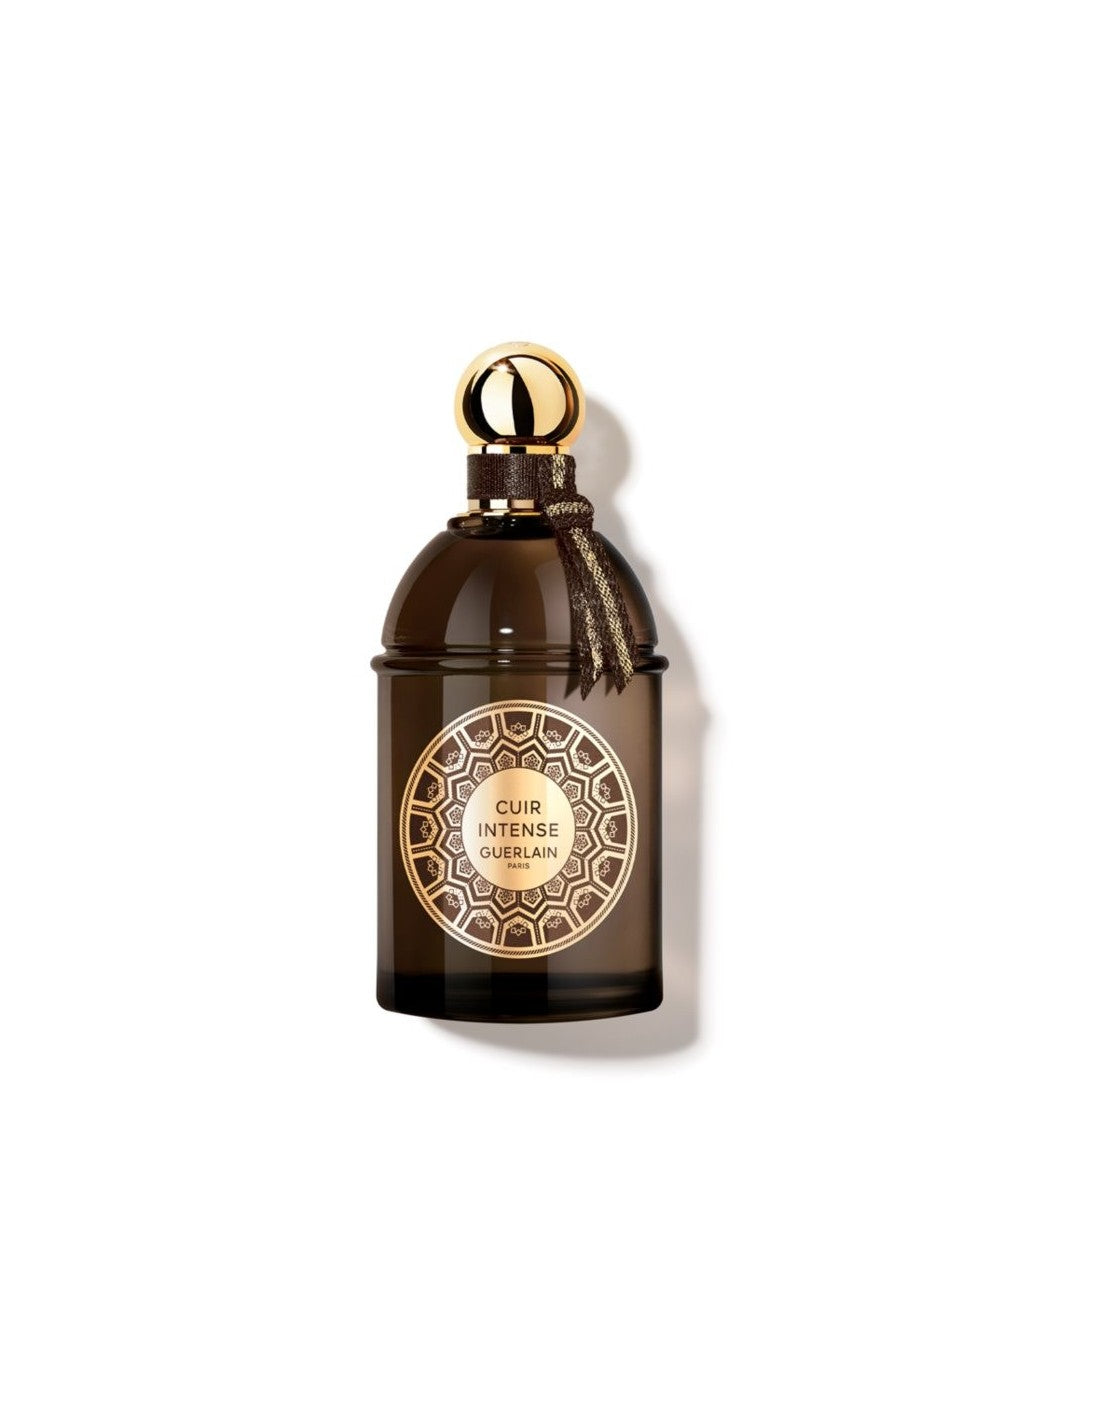 Guerlain Les Absolus d Orient Cuir Intense Eau de Parfum, 125 ml - Unisex perfume